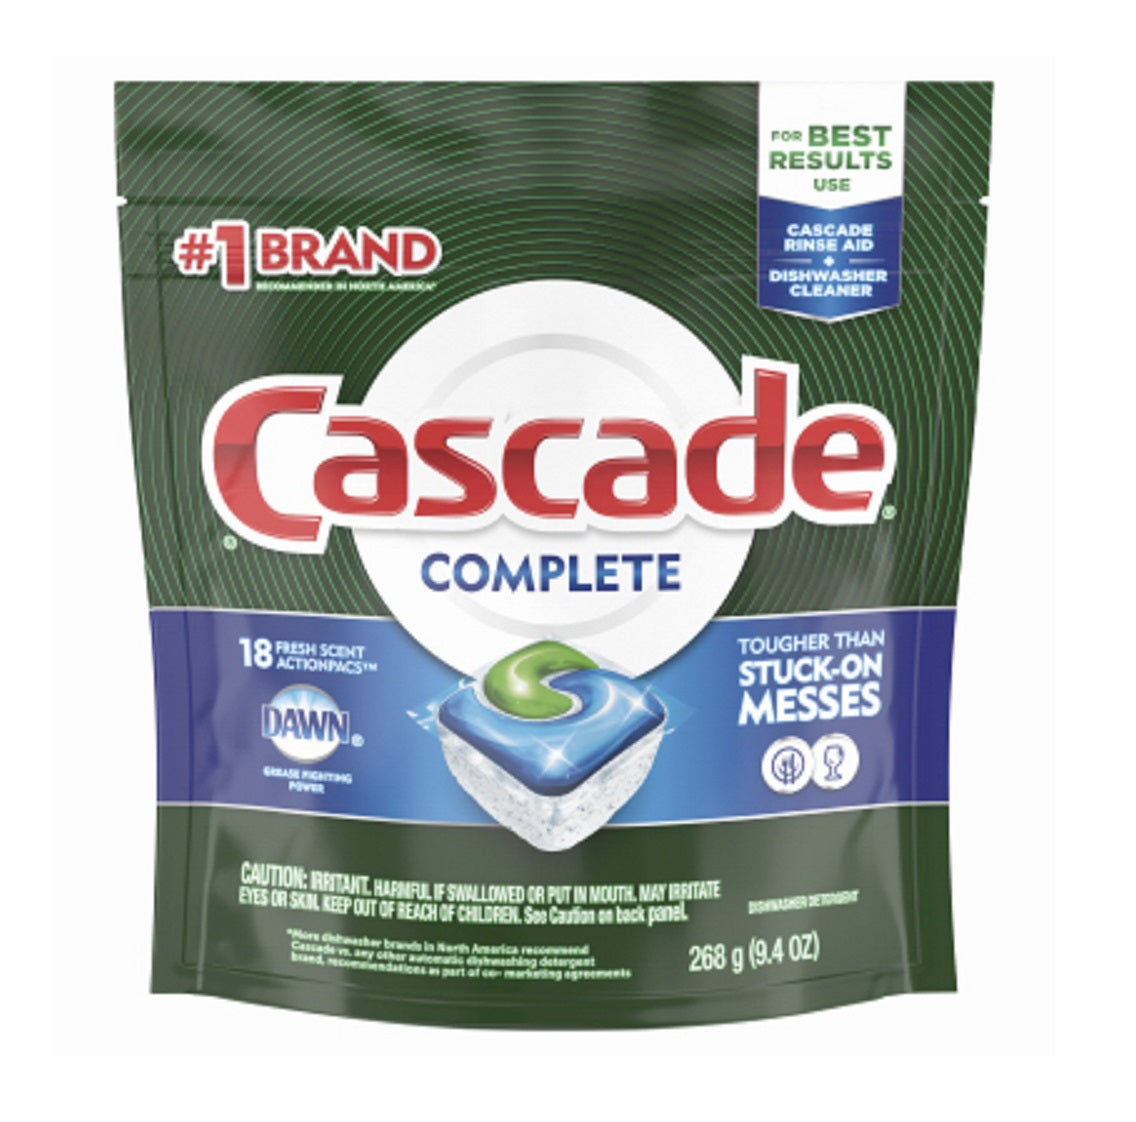 Cascade 86030 Complete Dishwasher Detergent, Fresh Scent